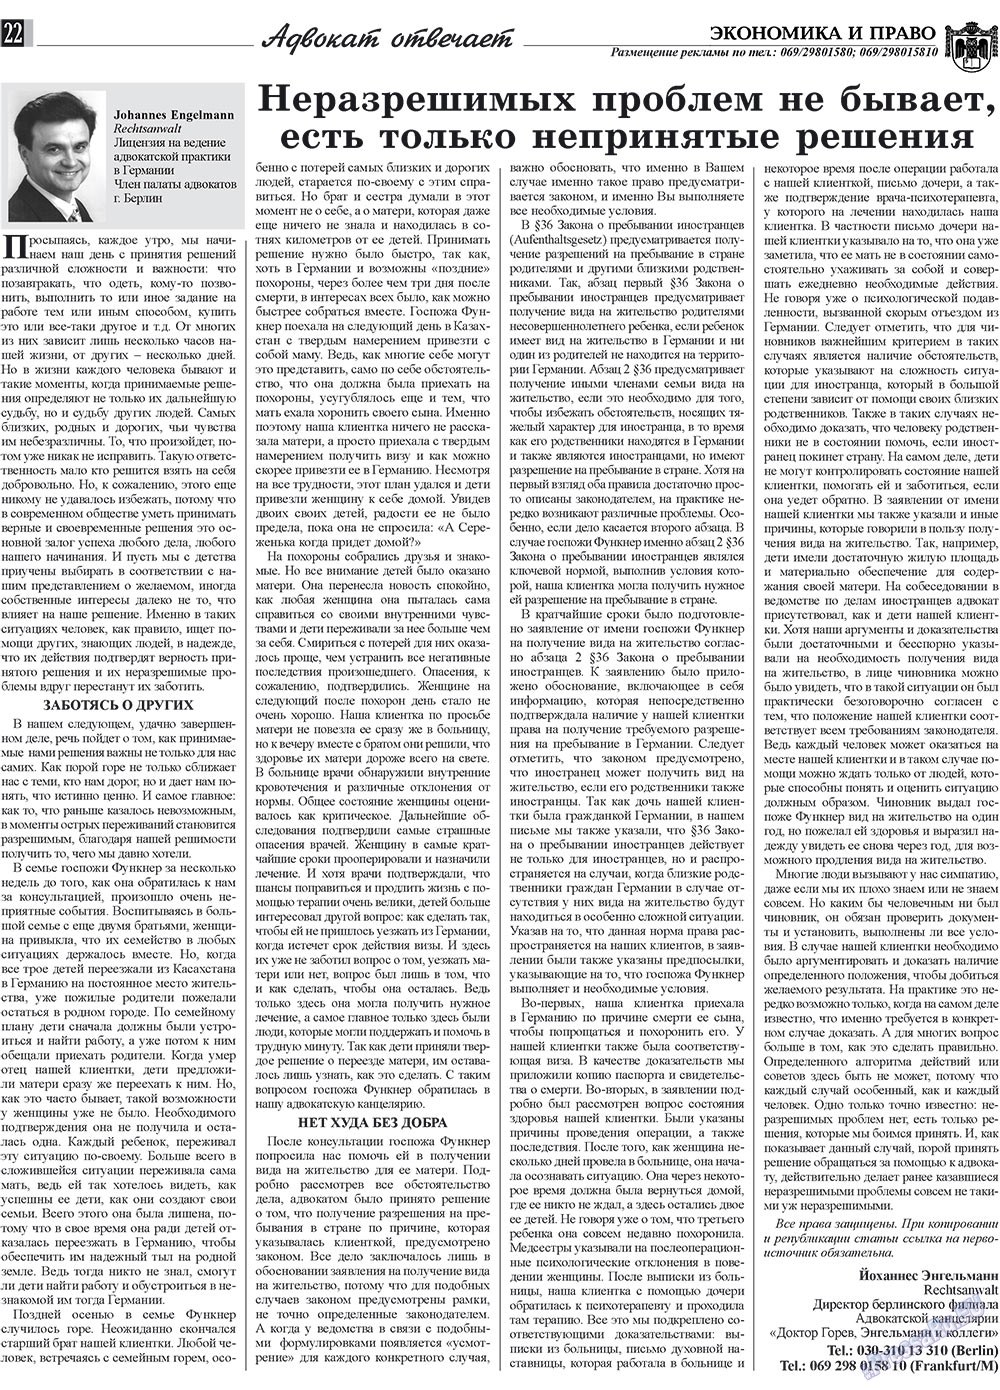 Экономика и право, газета. 2009 №12 стр.22